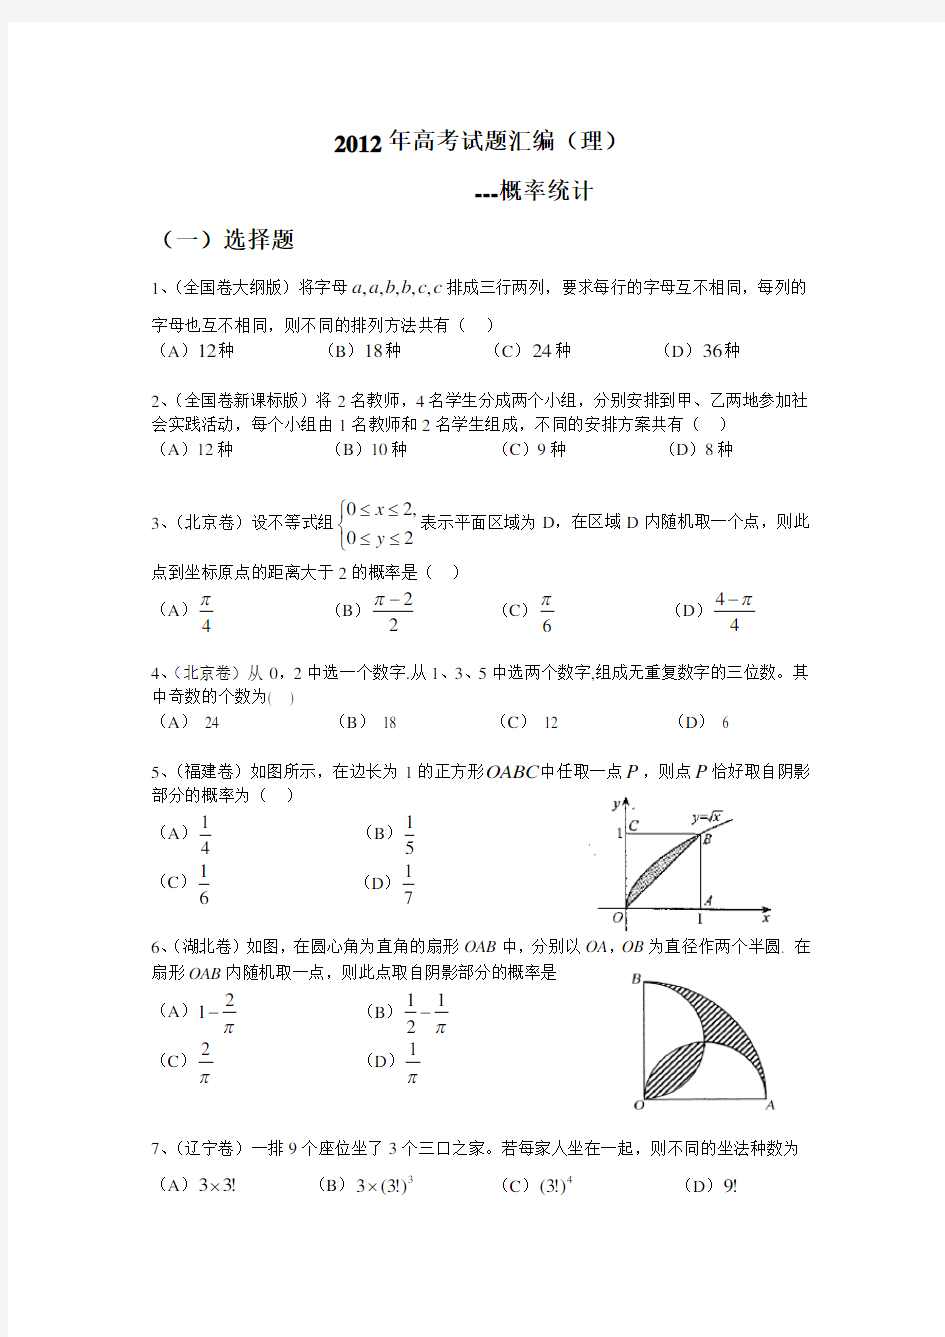 2012高考理科数学概率统计 (答案详解)